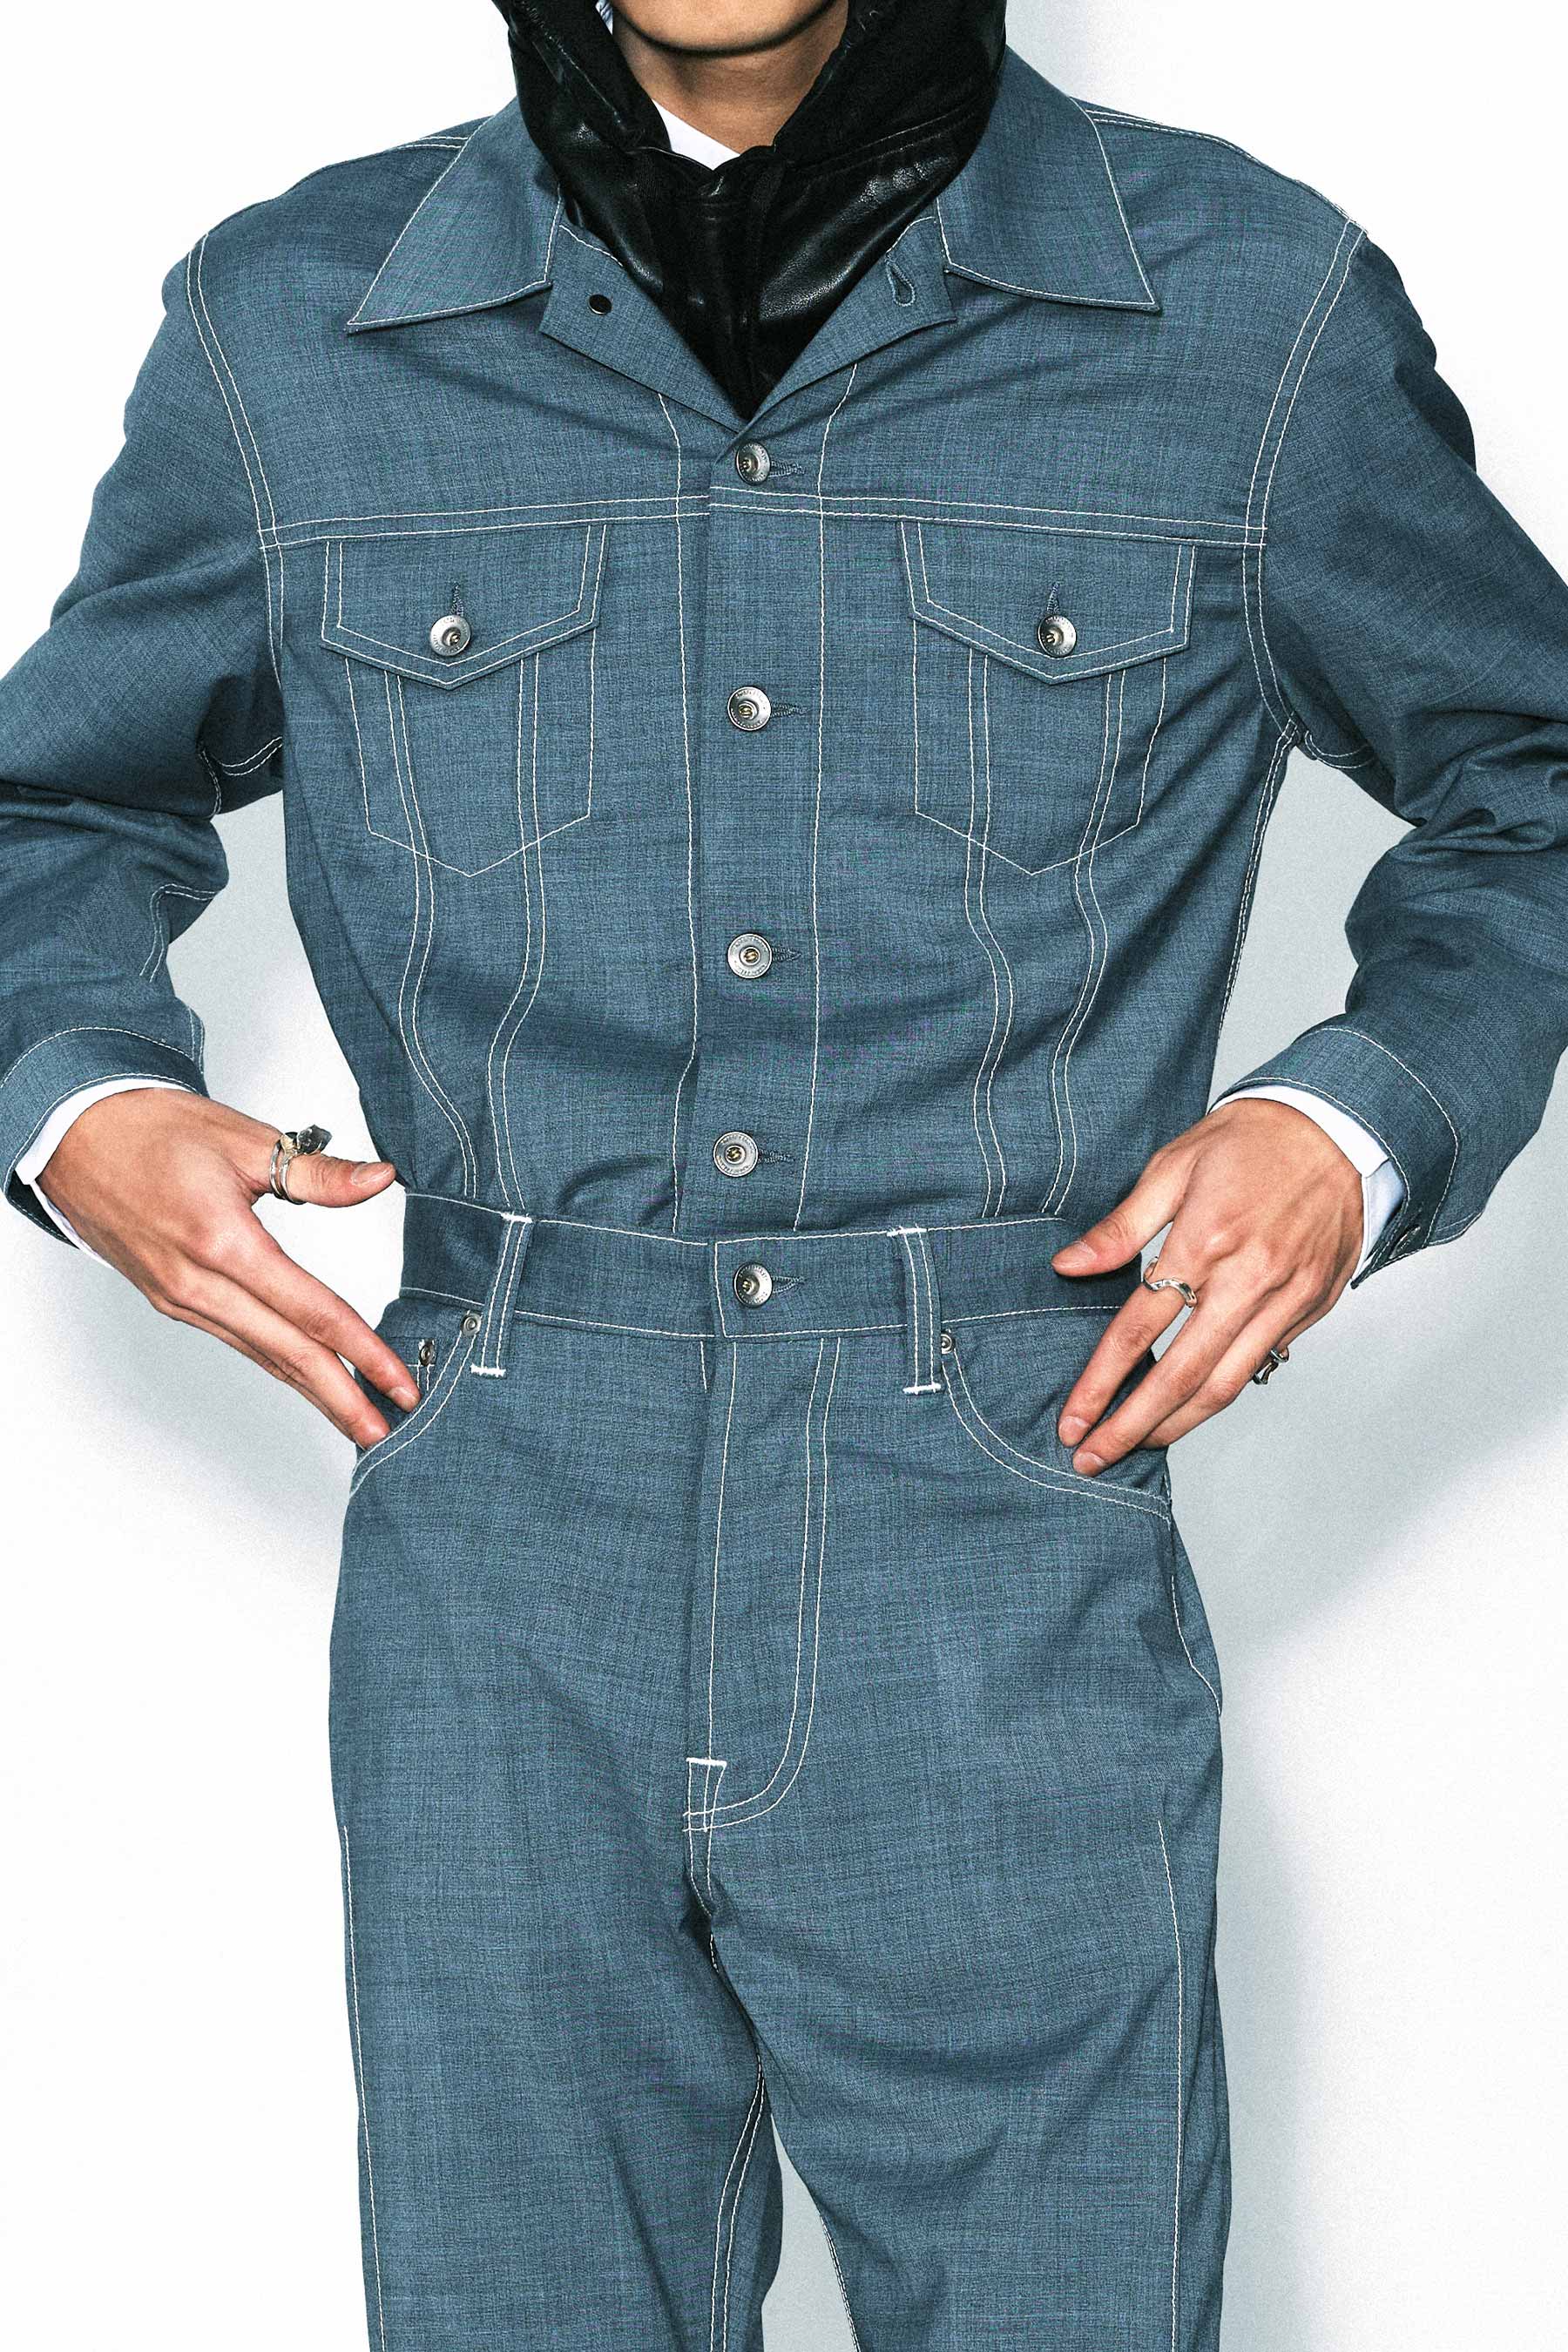 Blue Wool Trucker Jacket